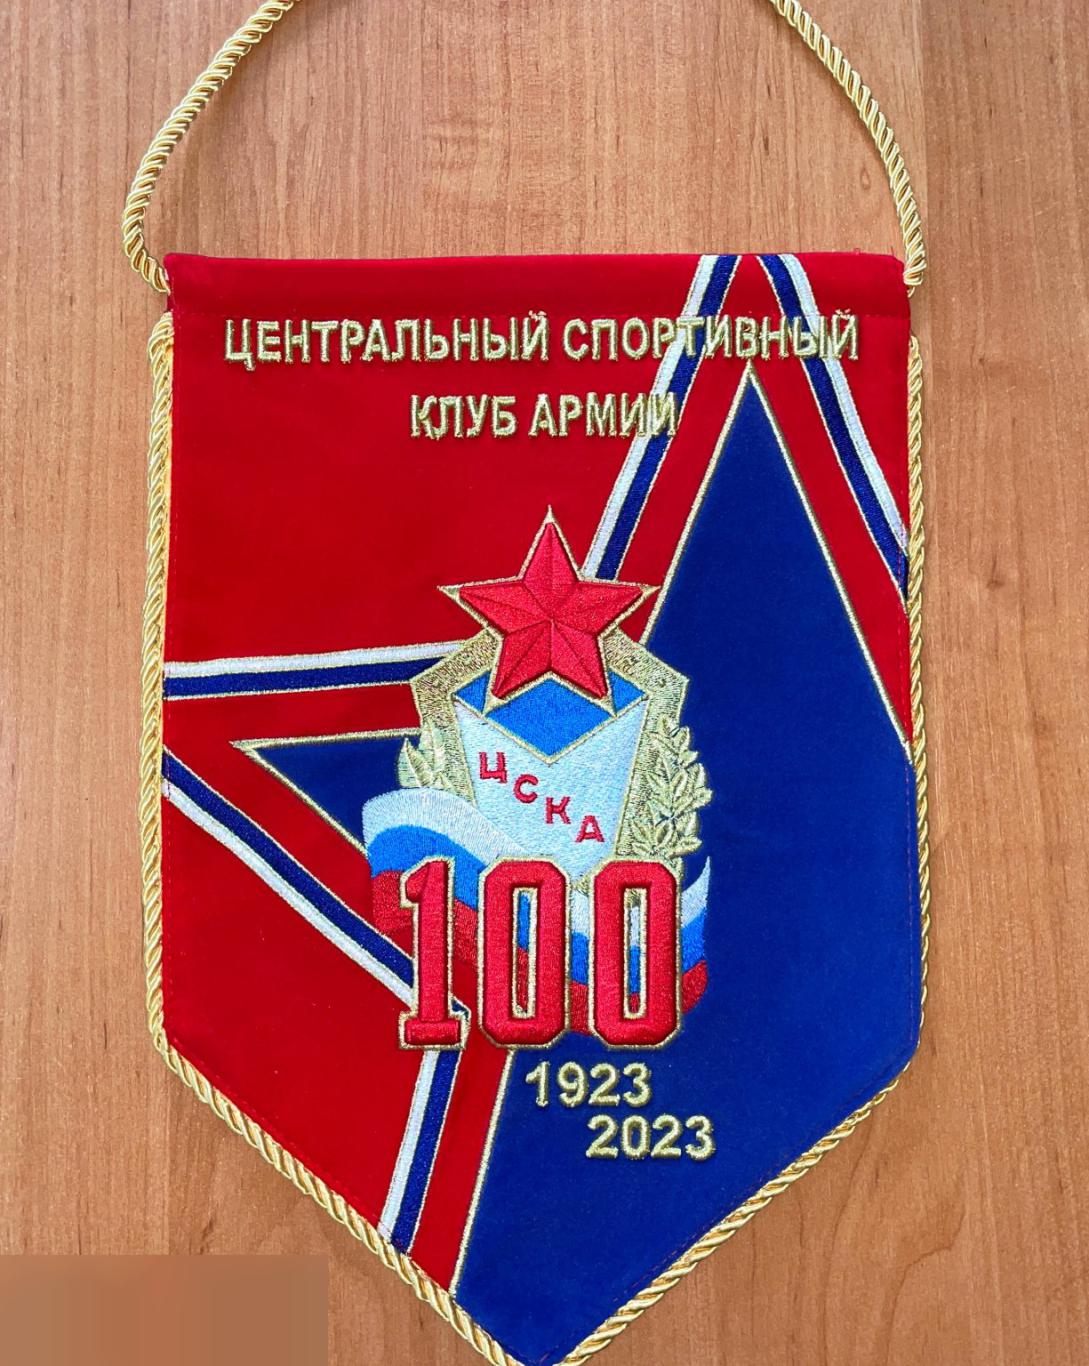 Коллекционный вымпел к 100 летию ЦСКА